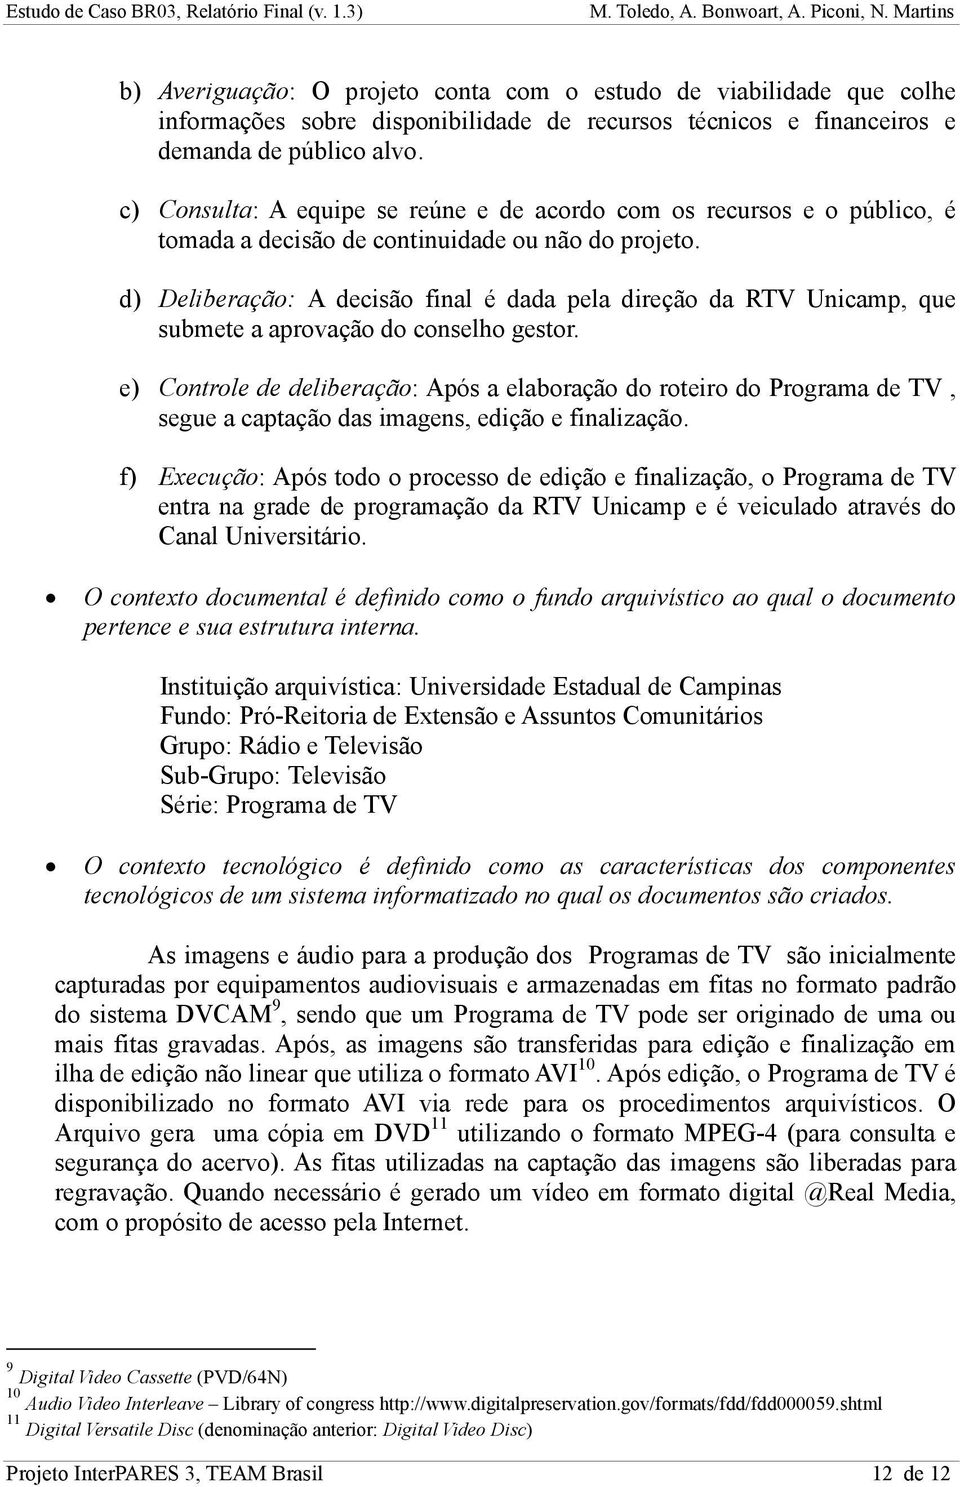 d) Deliberação: A decisão final é dada pela direção da RTV Unicamp, que submete a aprovação do conselho gestor.